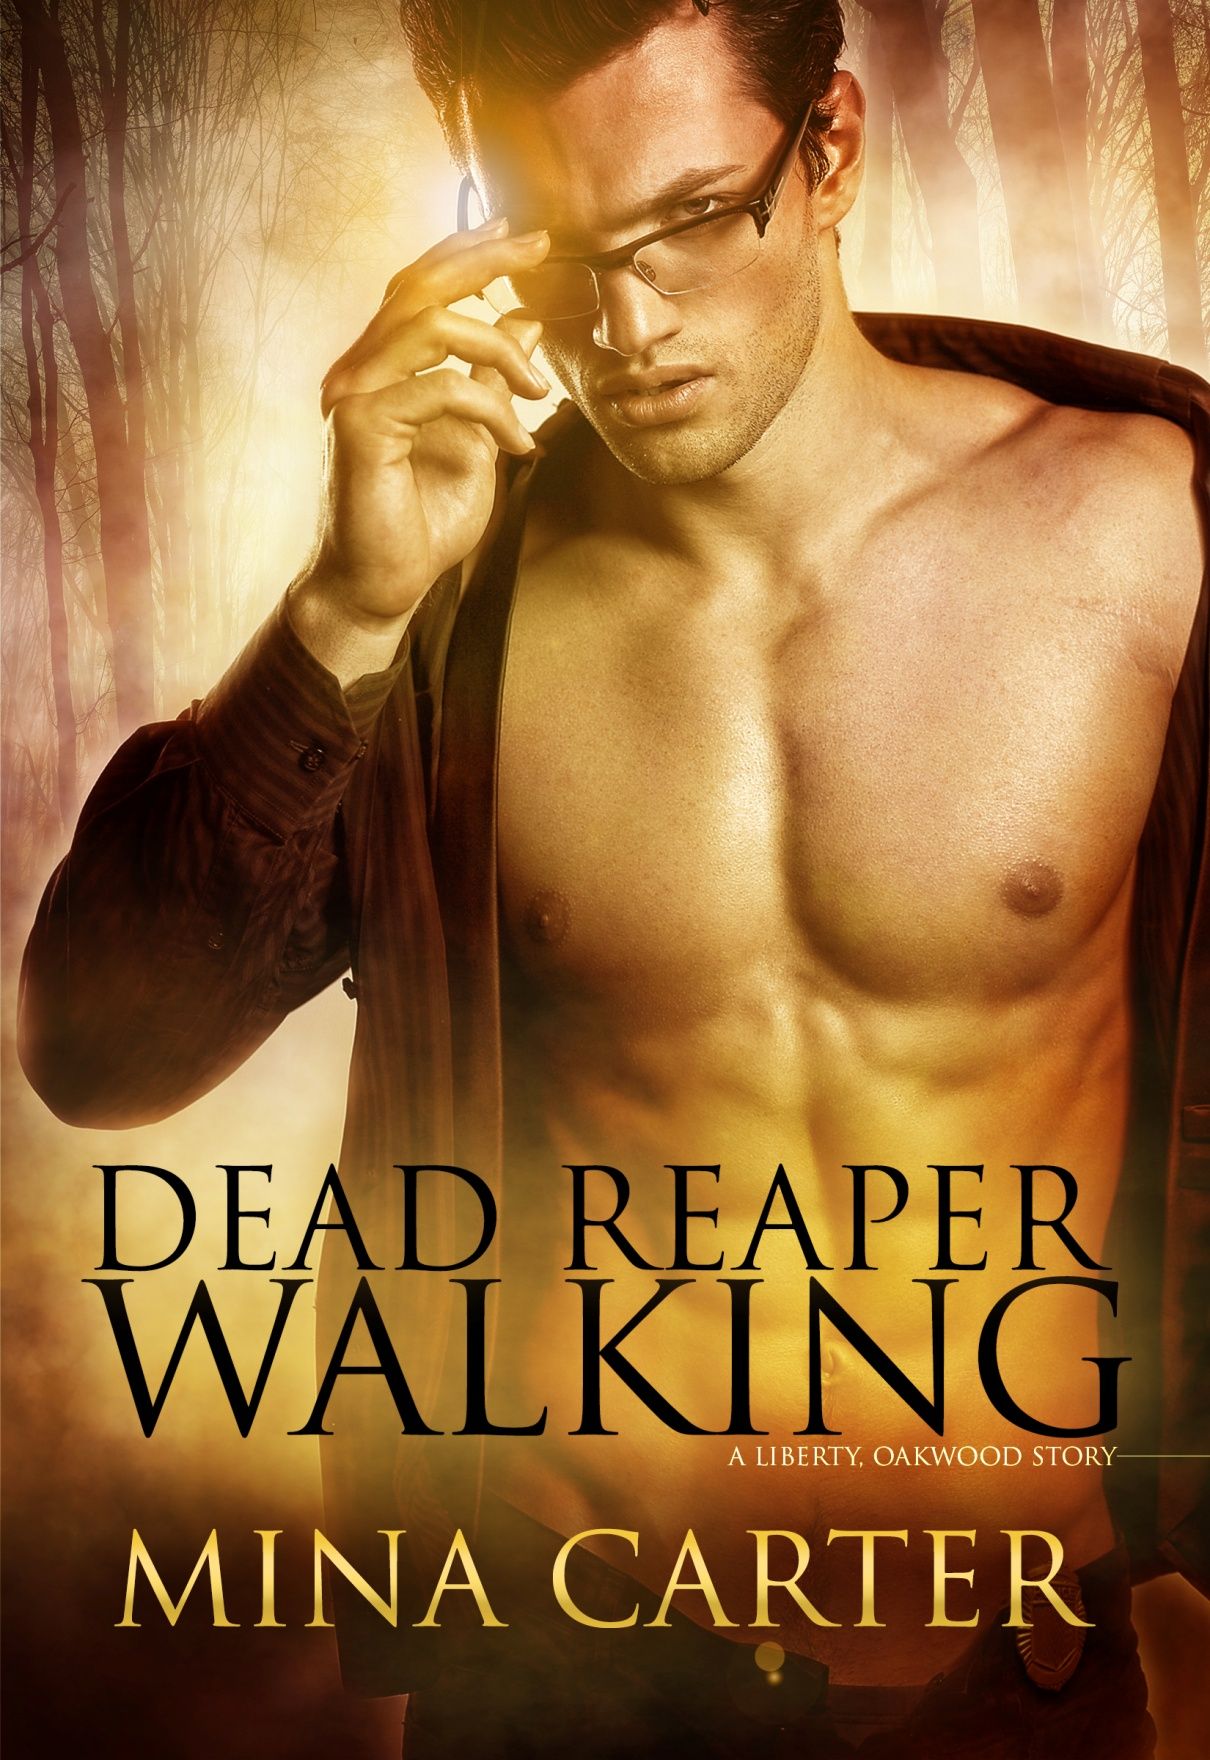 Dead Reaper Walking (2014) by Mina Carter